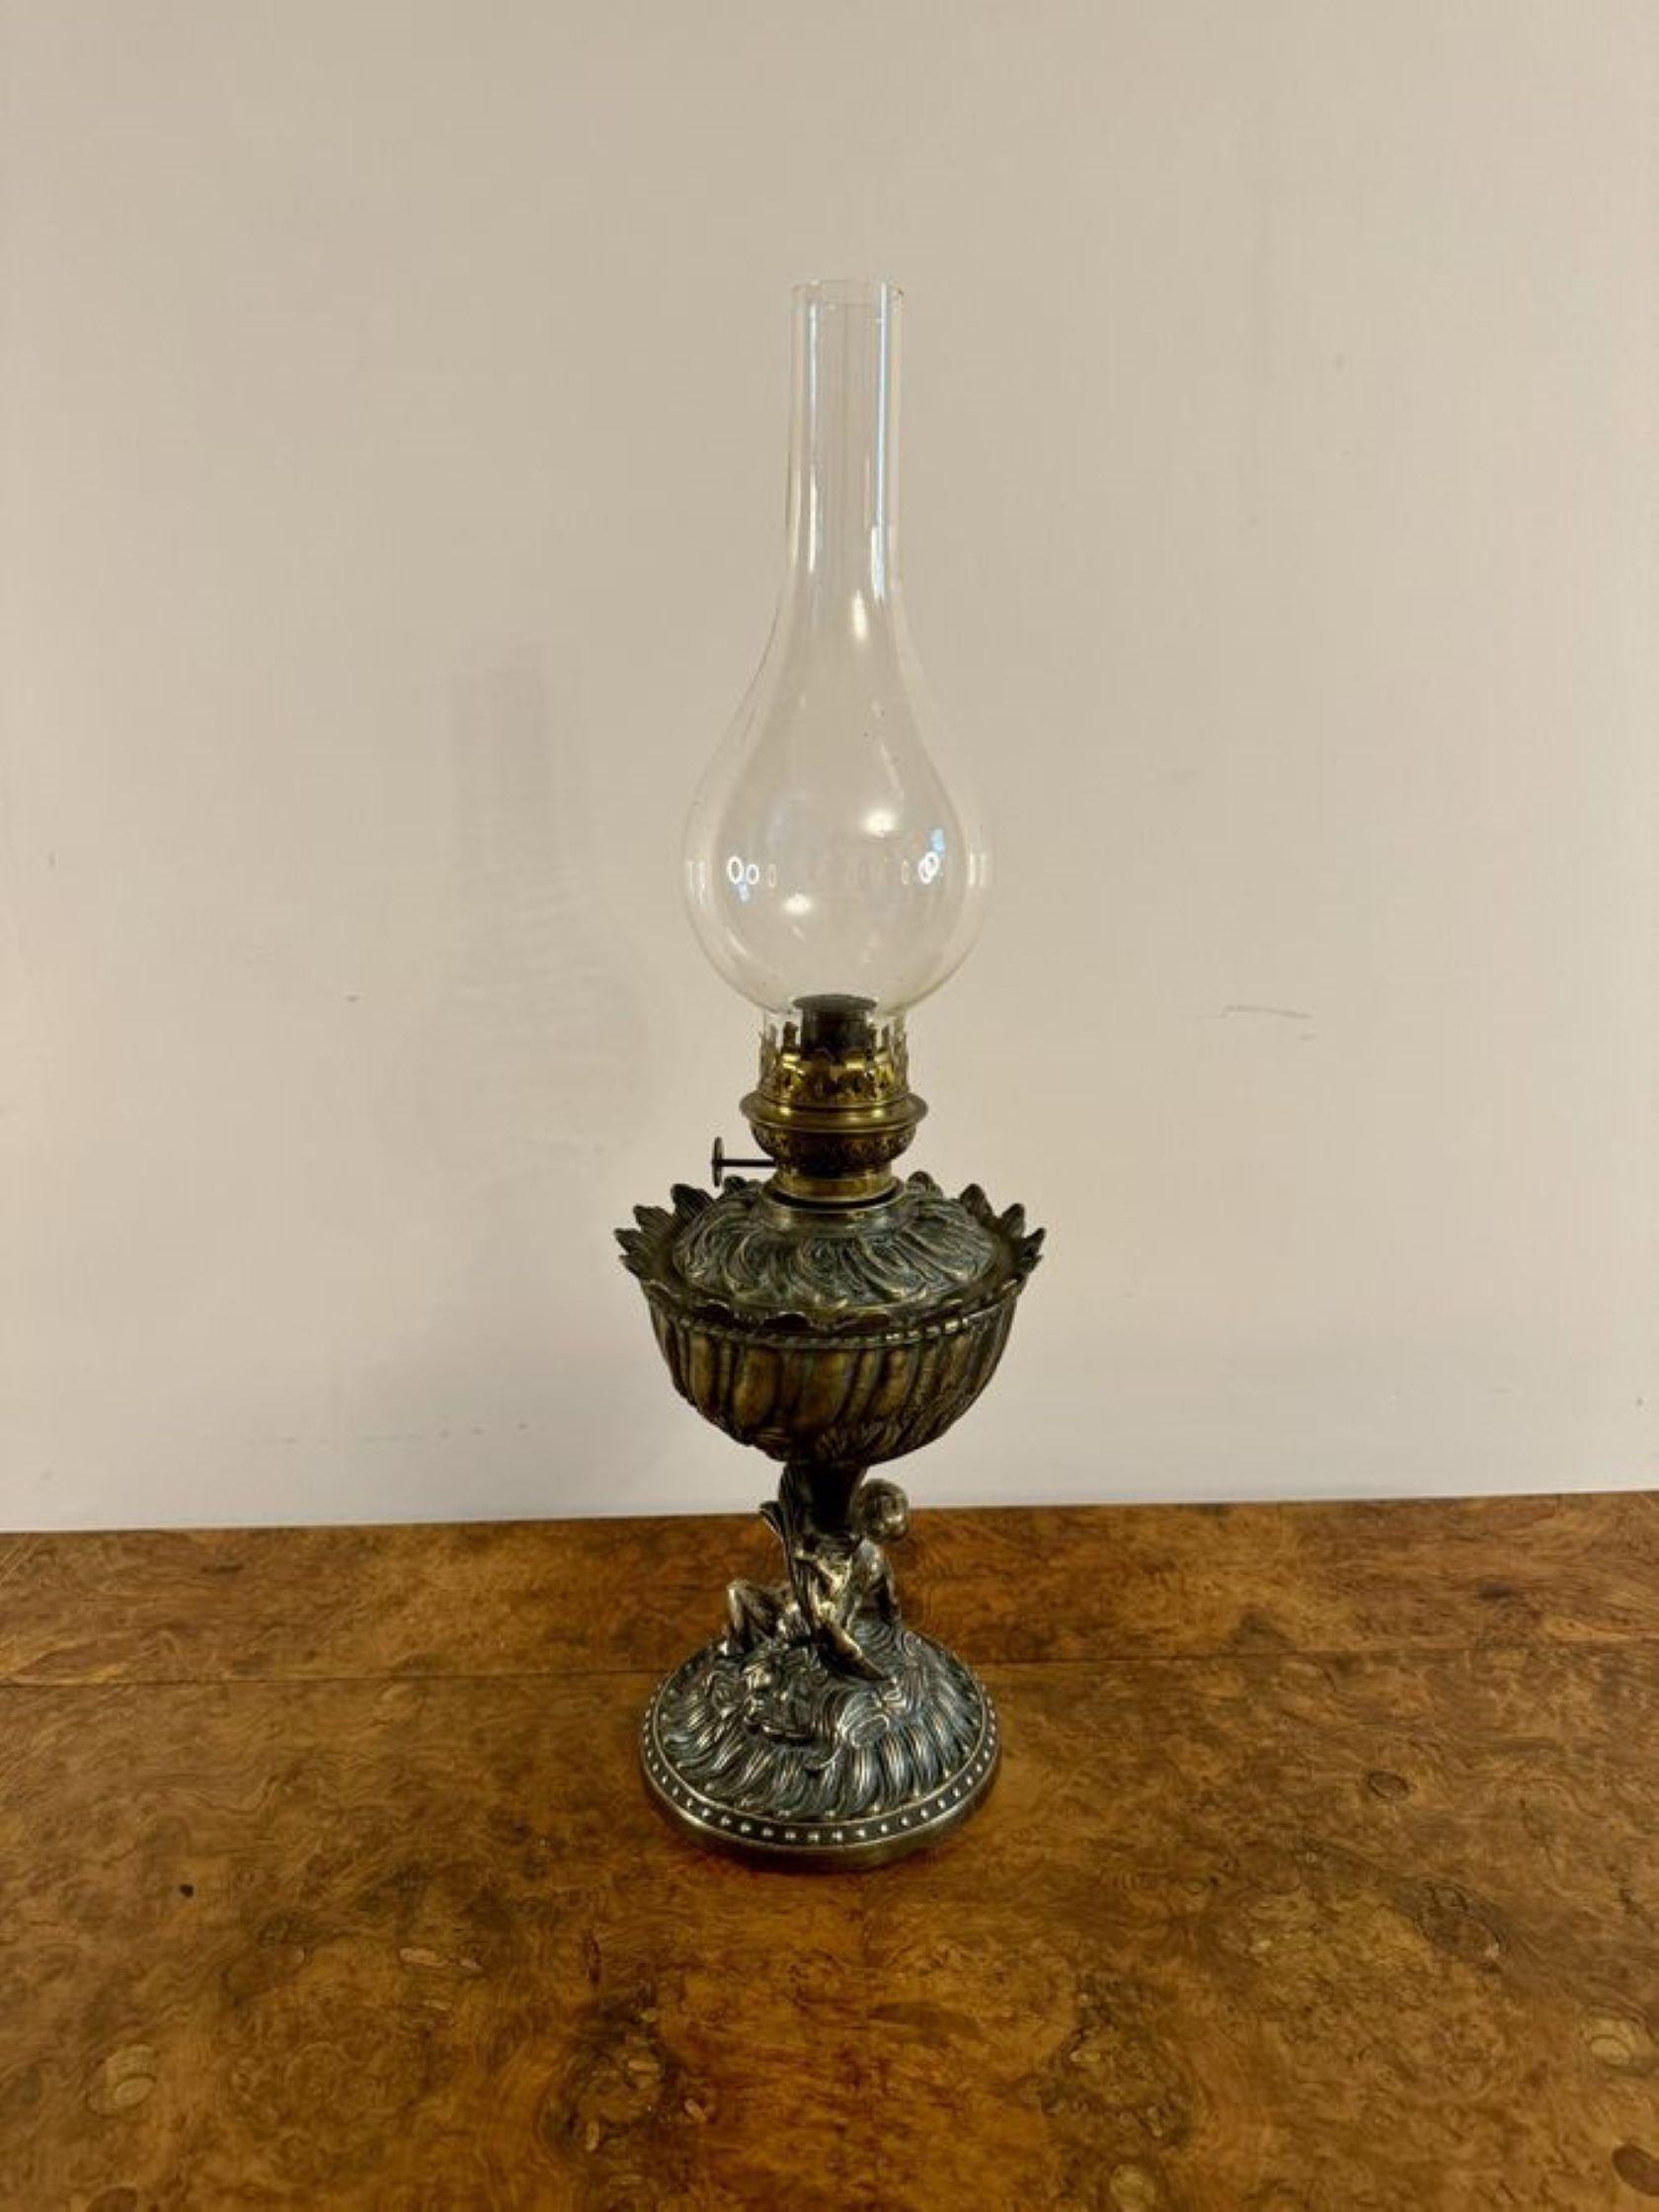 Lampe à huile victorienne ancienne de qualité inhabituelle avec une cheminée en verre bulbeux, un seul brûleur, une colonne cannelée avec une merveilleuse décoration de volutes, avec un chérubin monté au-dessus de la base circulaire. 

D. 1880